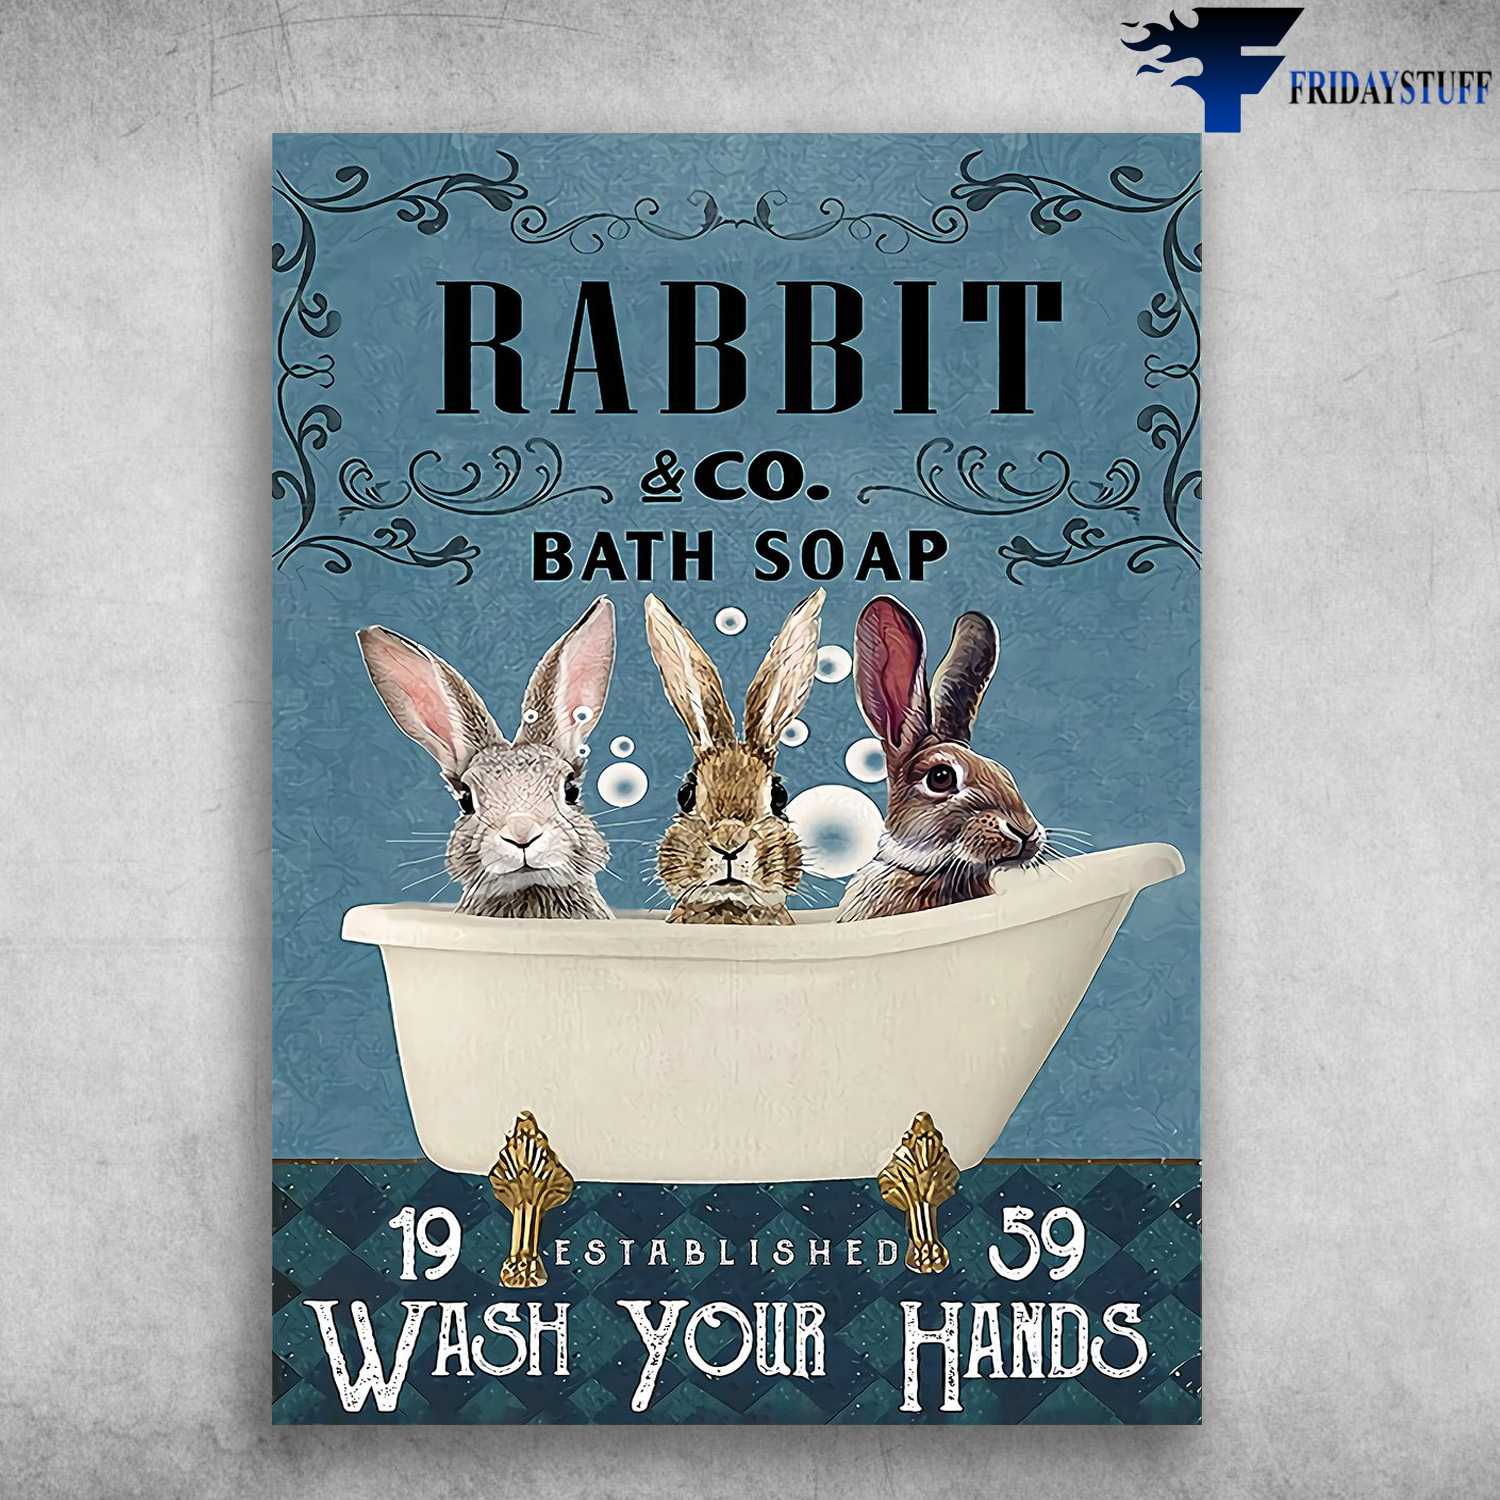 Rabbit Bath Soap Poster - Rabbit CO. Bath Soap, 19 Established 59, Wash Your Hands